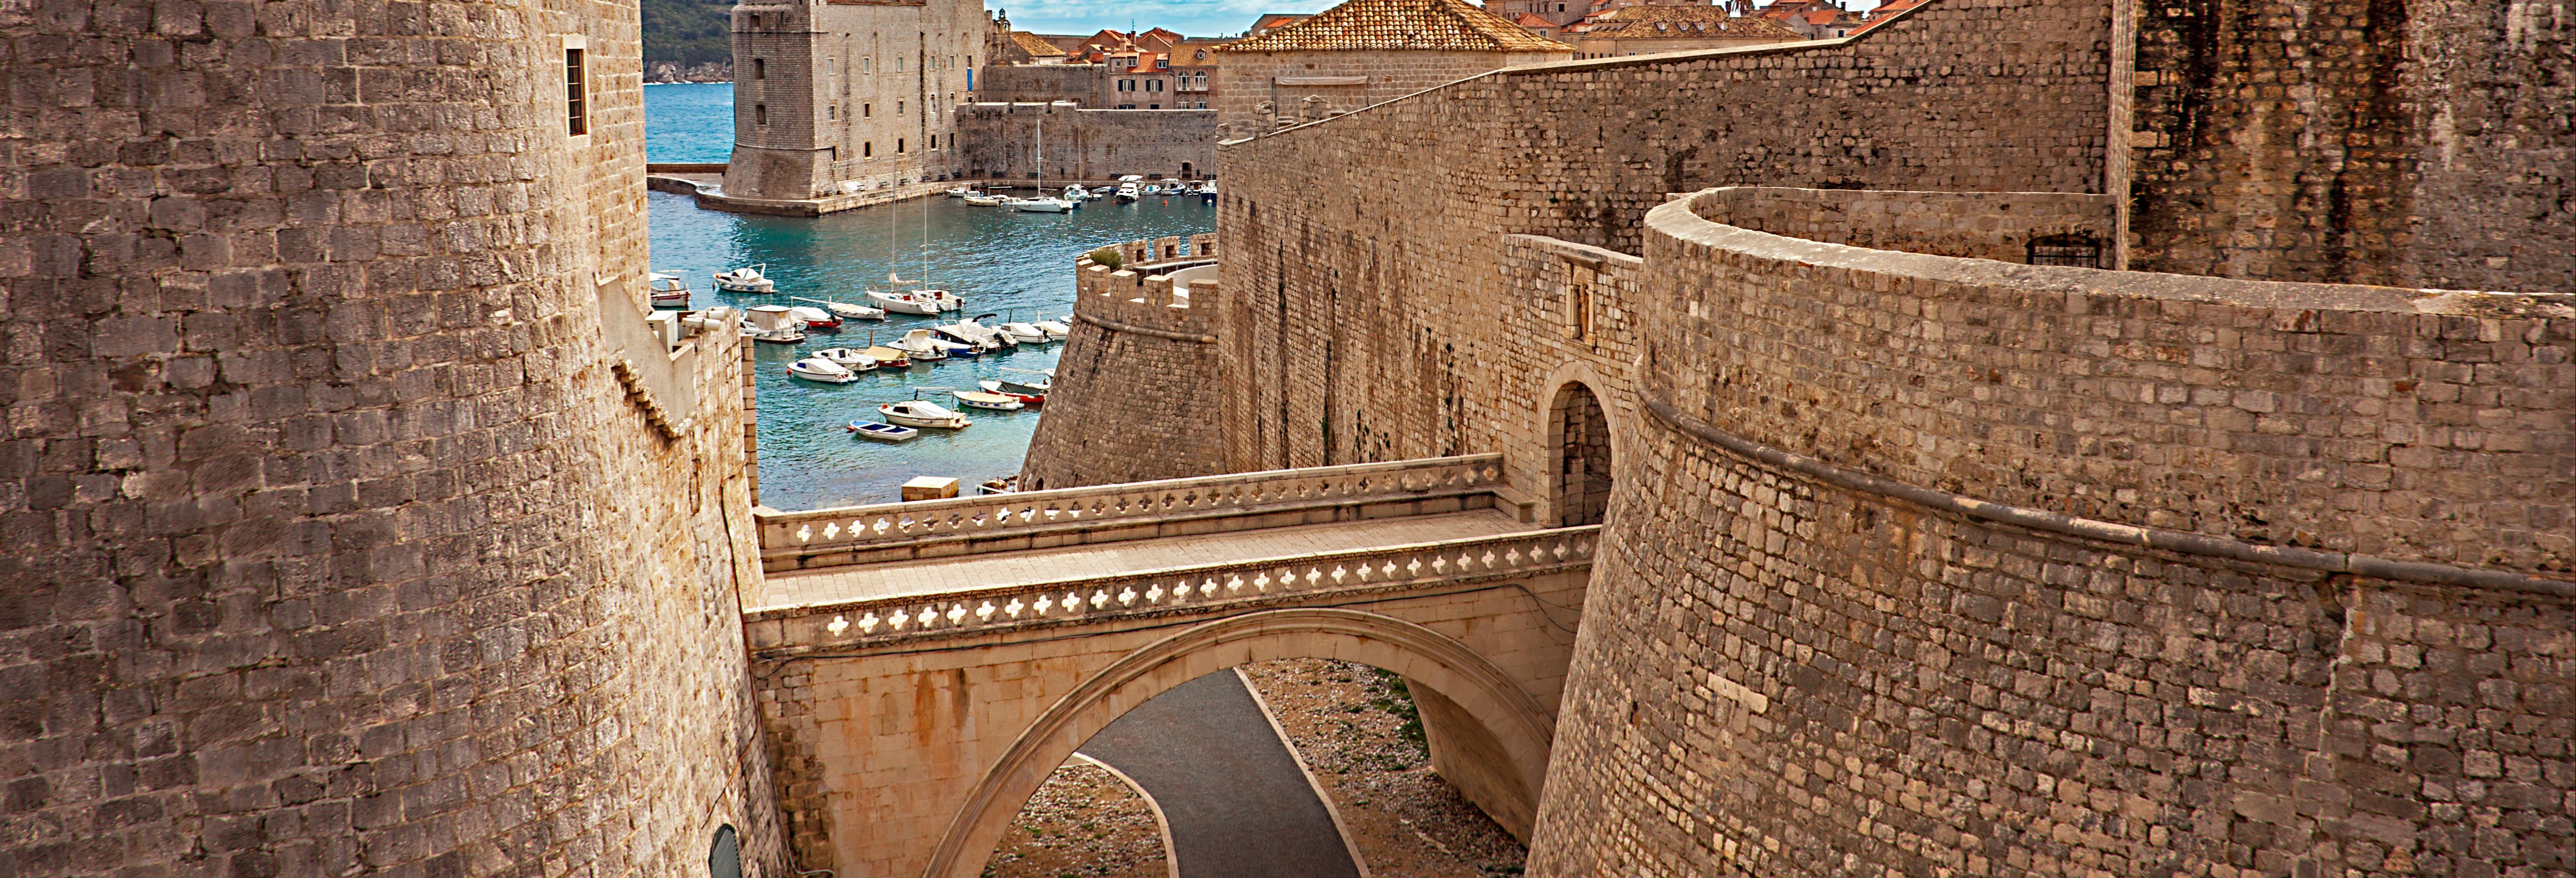 Visita guiada por Dubrovnik + Passeio de karaka